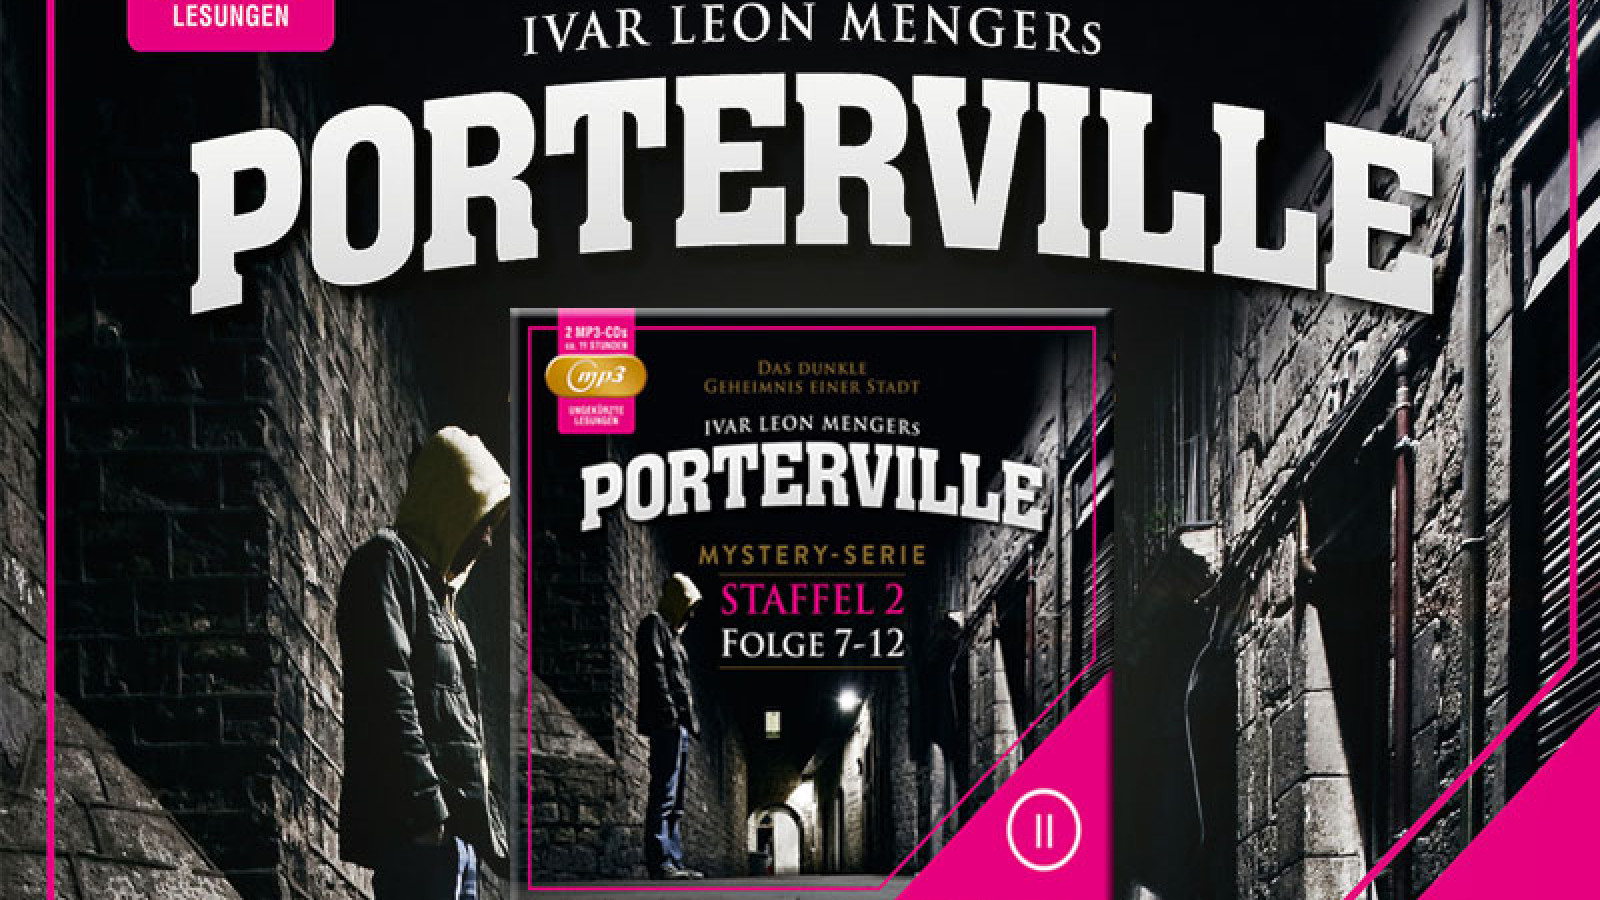 Porterville "Staffel 2 – Folge 07-12" ab 09.05.2014 als mp3-CDs und Download